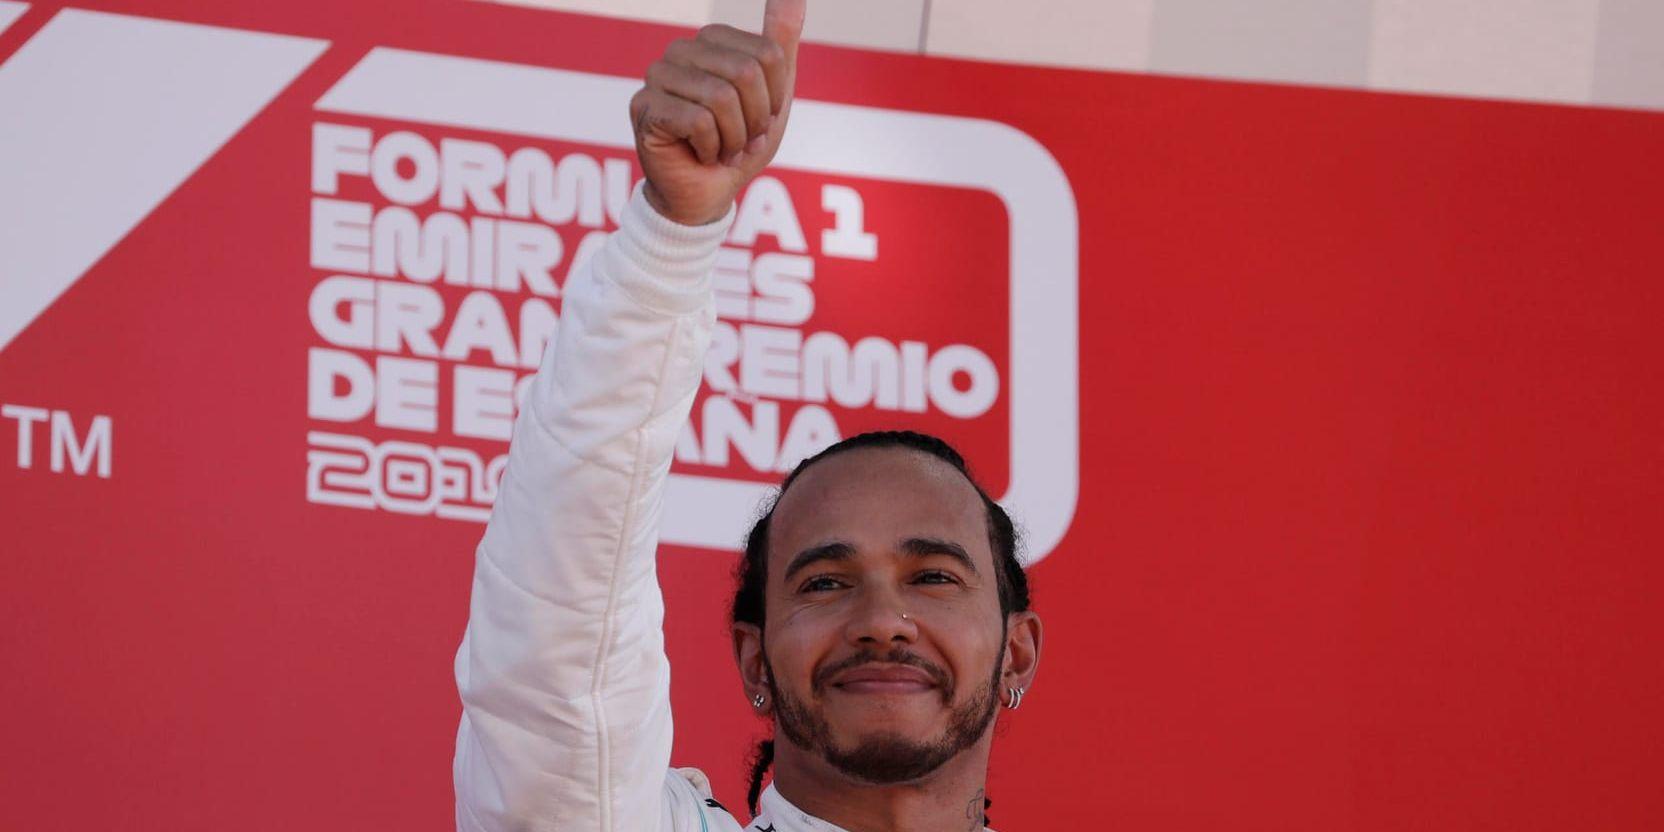 Formel 1-stjärnan Lewis Hamilton kunde jubla på segerpodiet i Spanien.